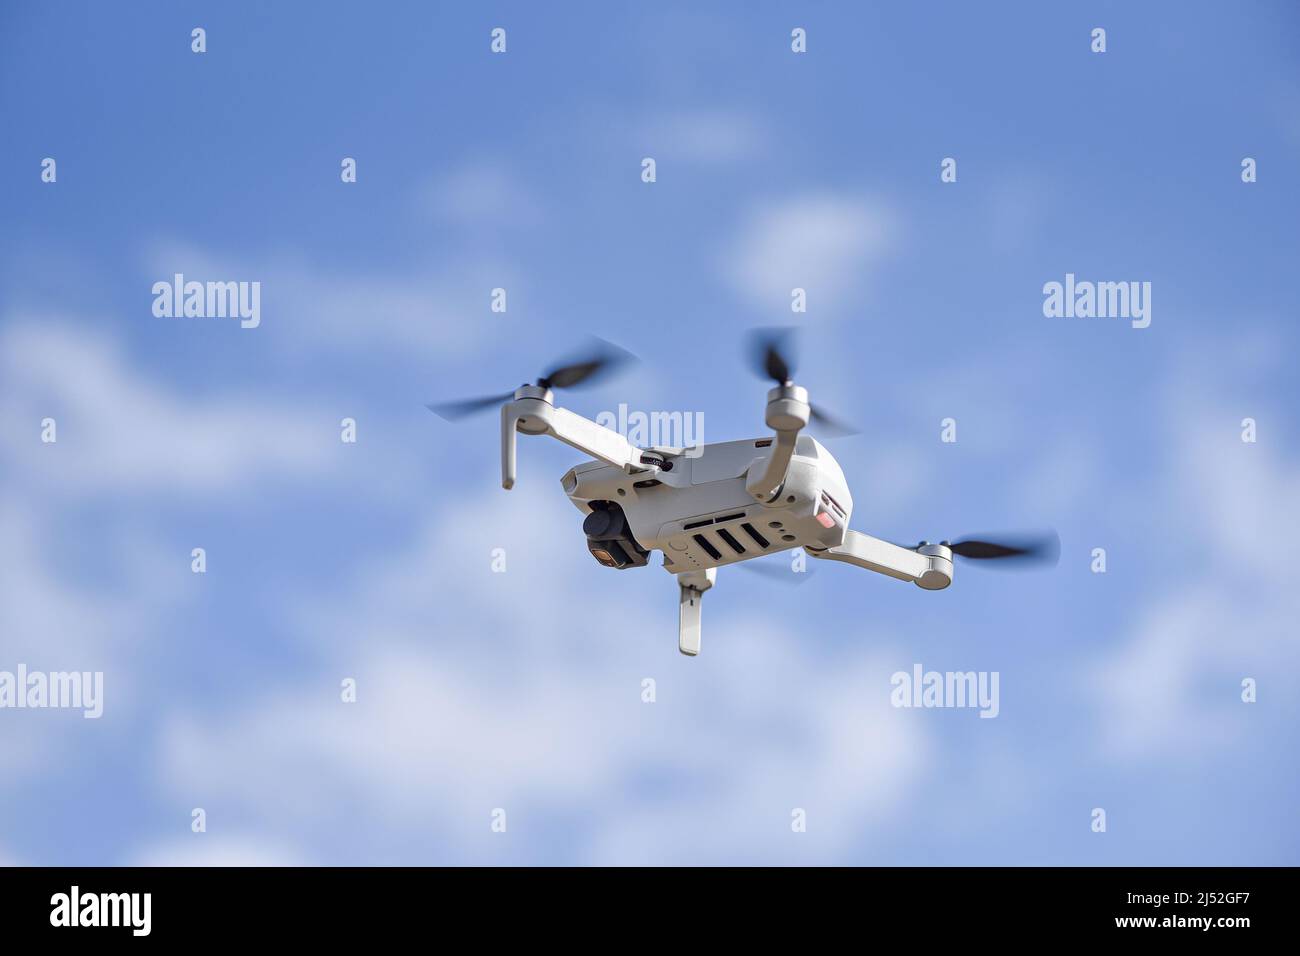 10 Aprile 2022 - Cracovia, Polonia: Drone DJI Mavic Mini 2 che vola in aria, cielo blu sullo sfondo. Foto Stock